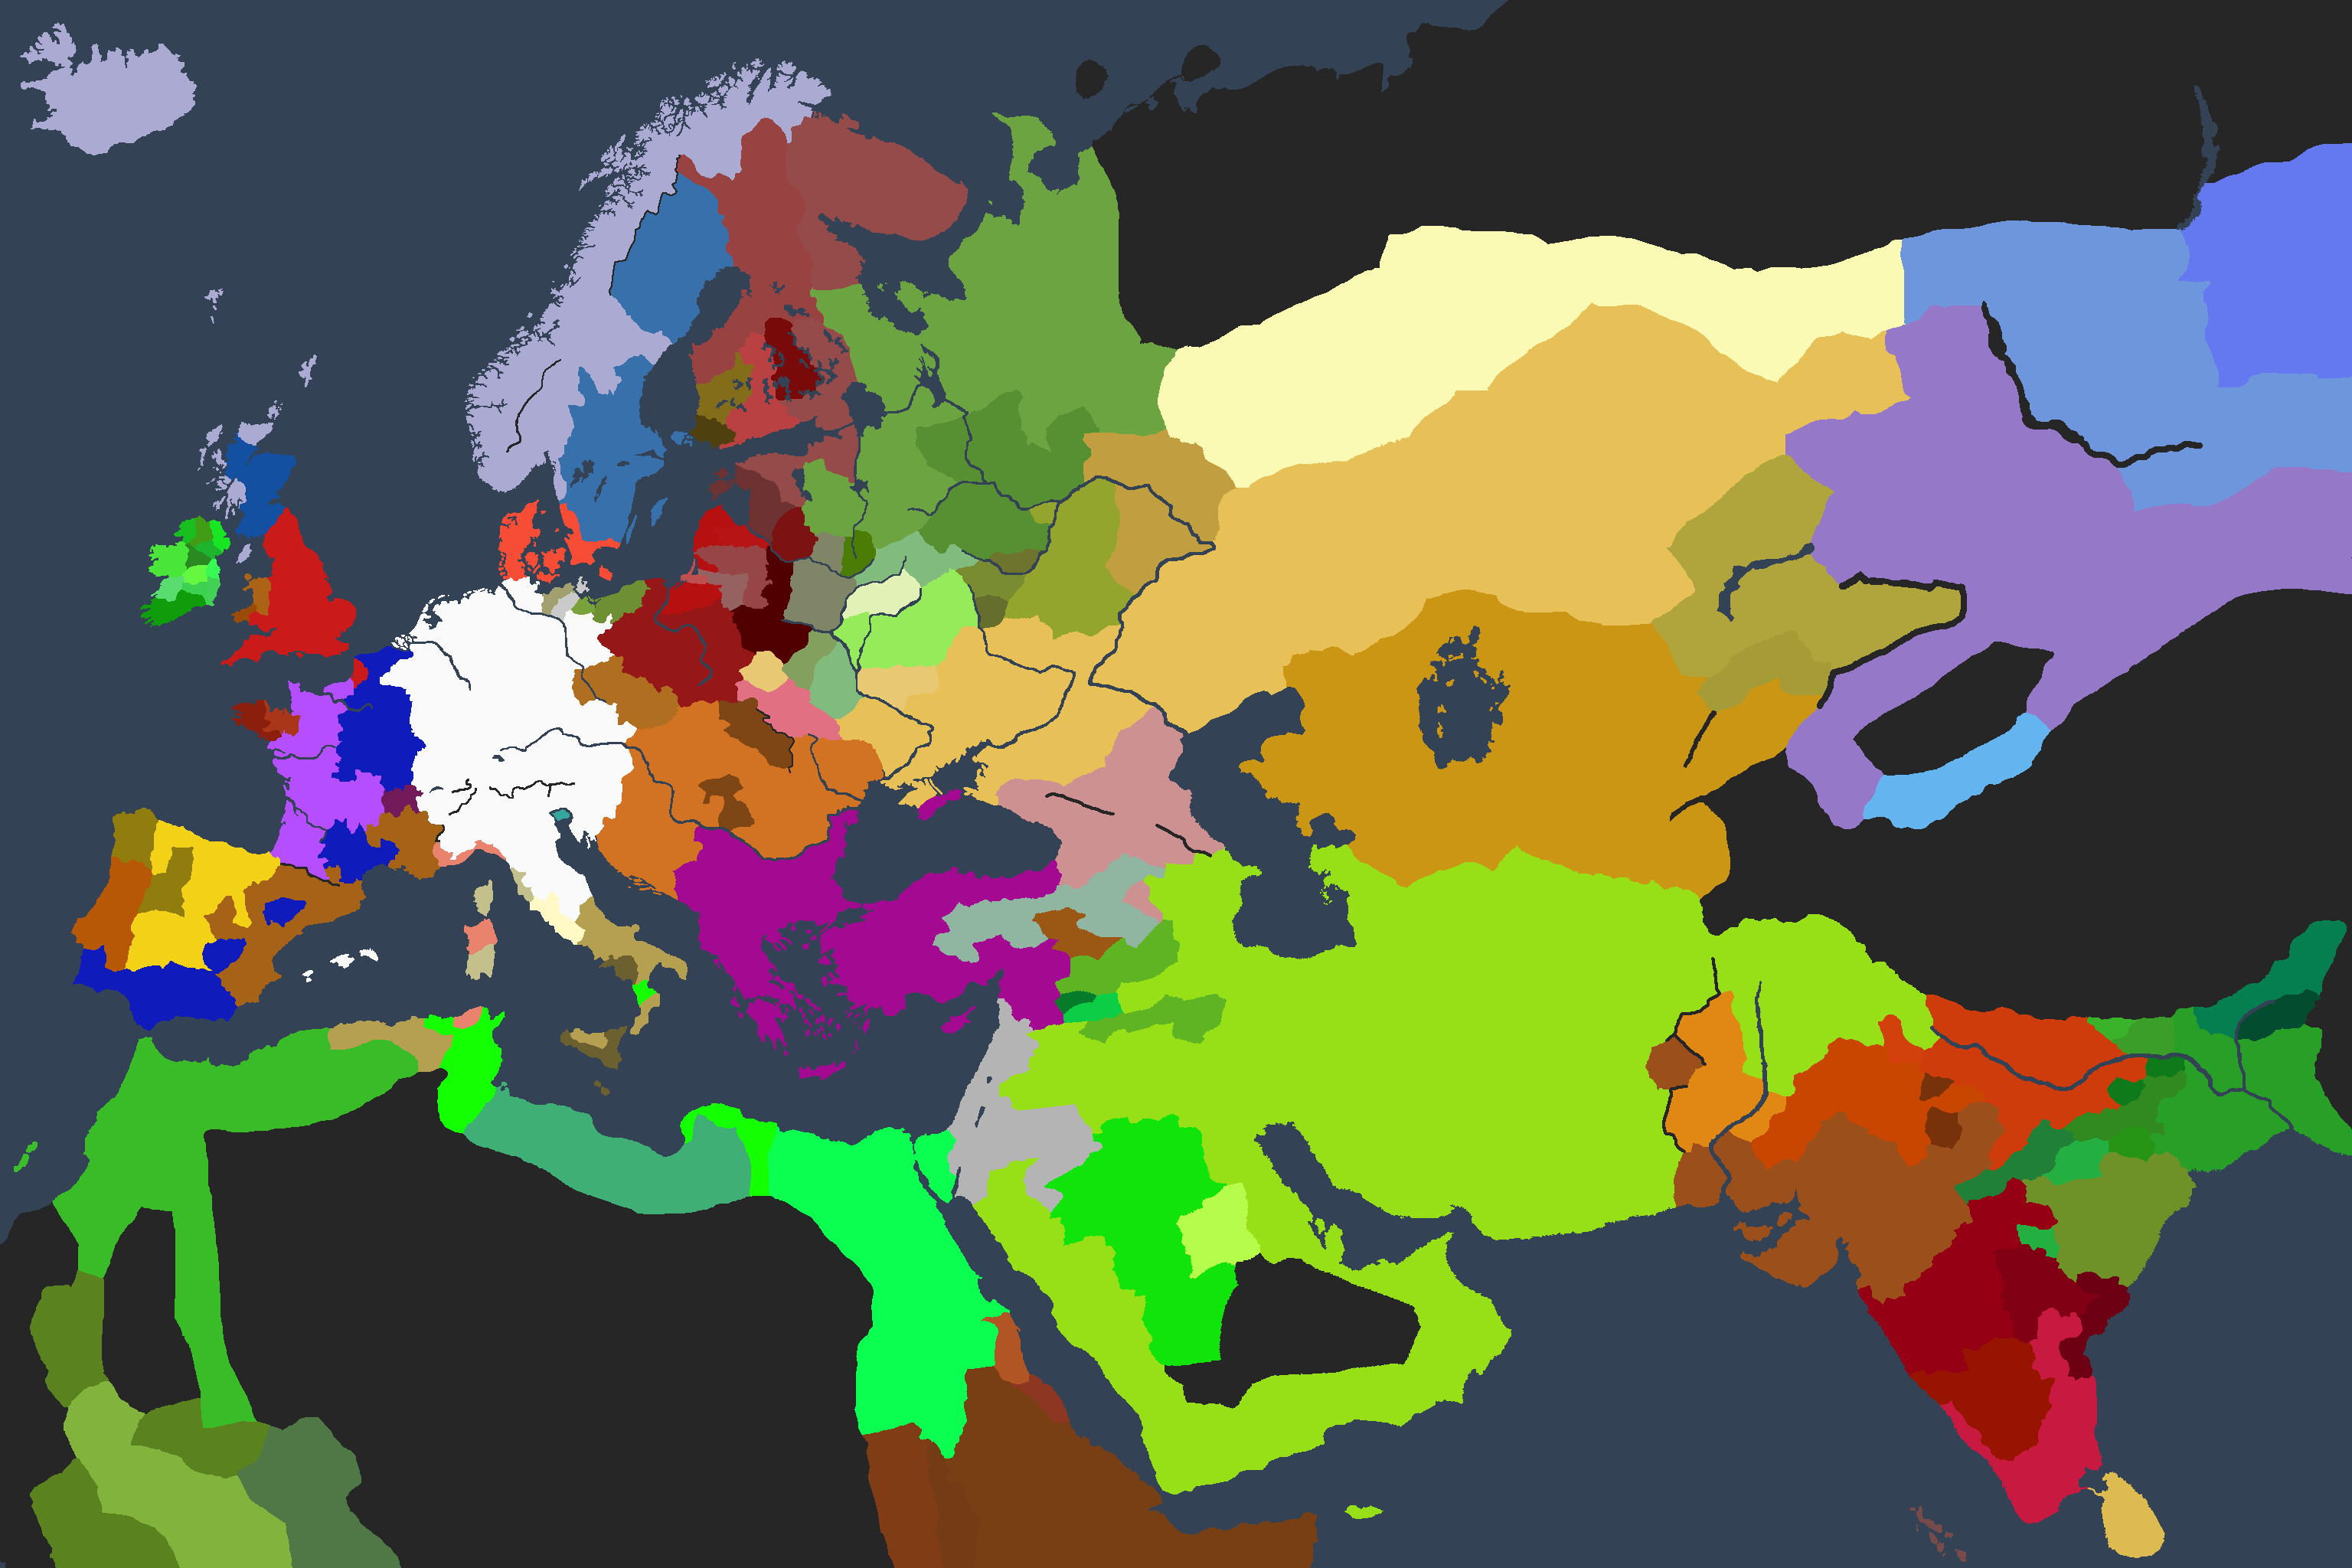 [CK2] AAR Empire Romain Oriental - 1153 1470940849-ck2-map-3